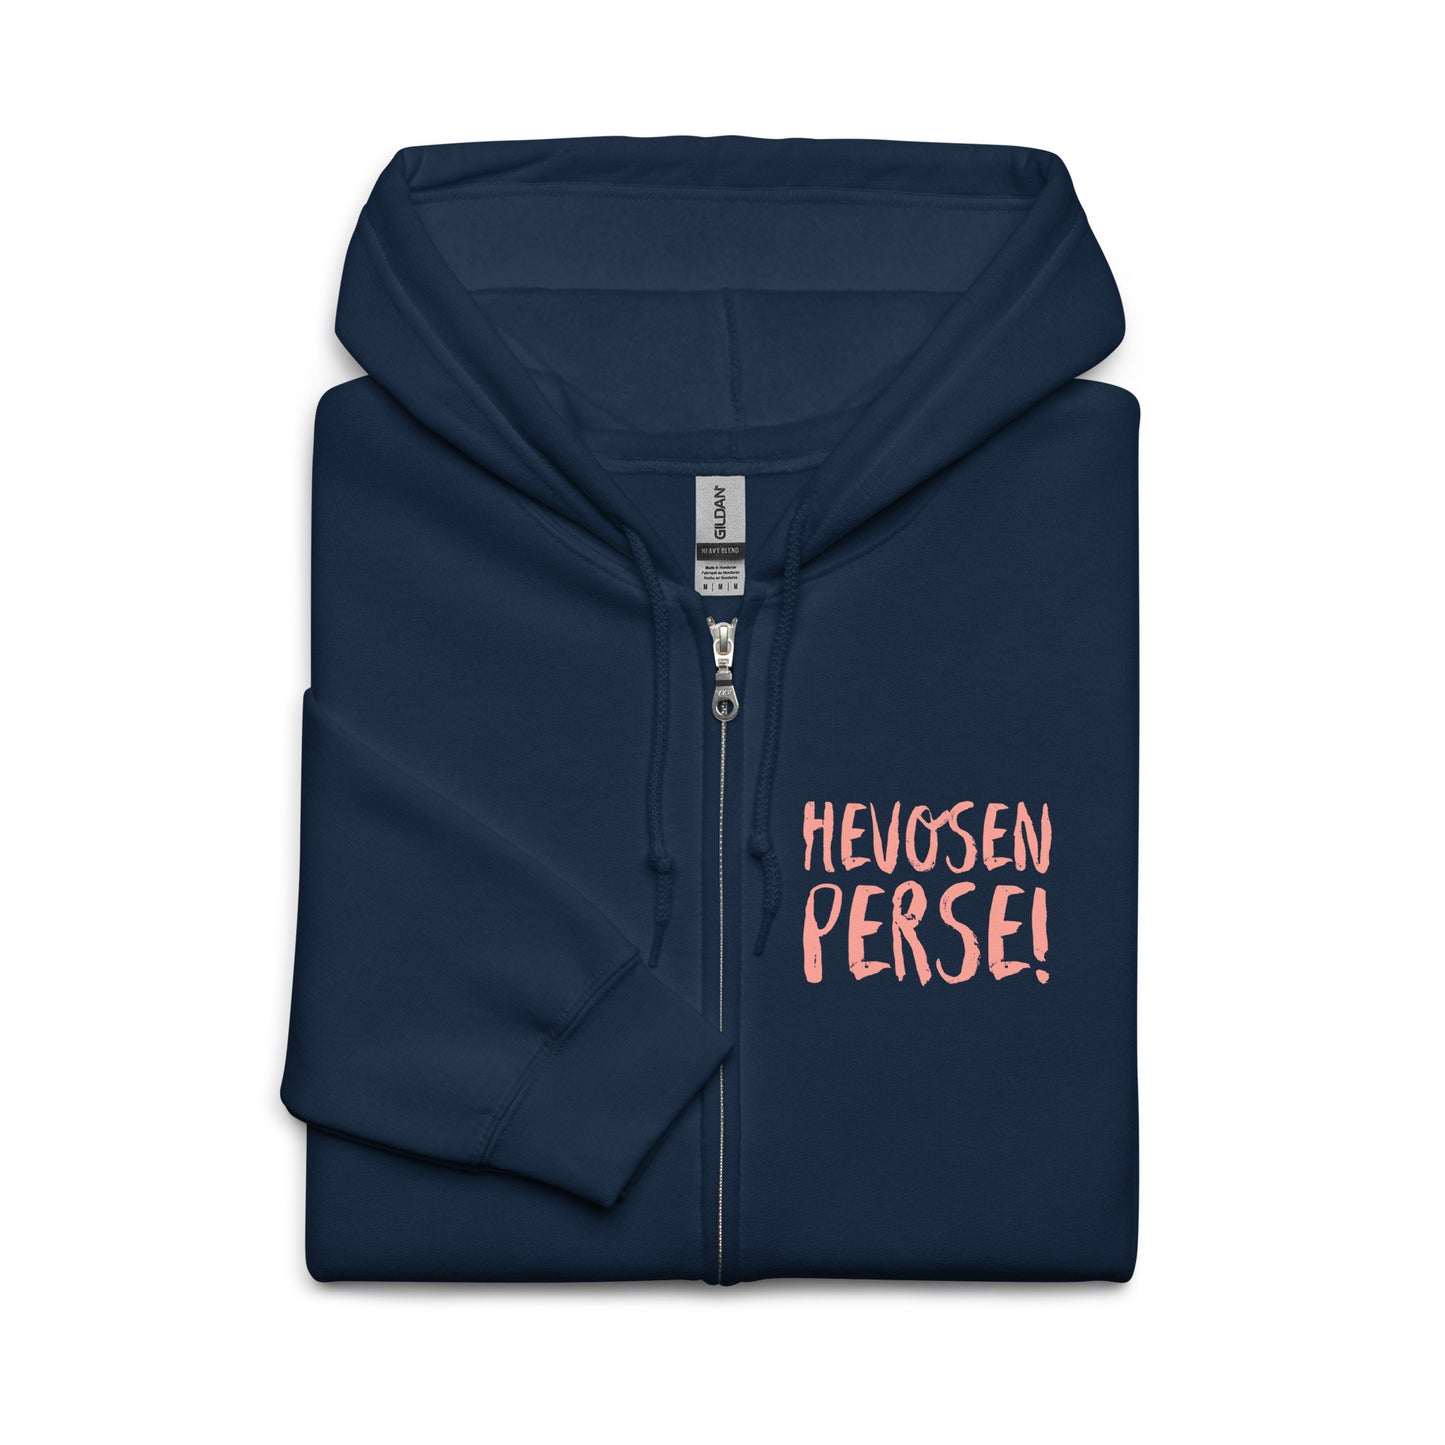 "Horse's ass" hoodie with zipper